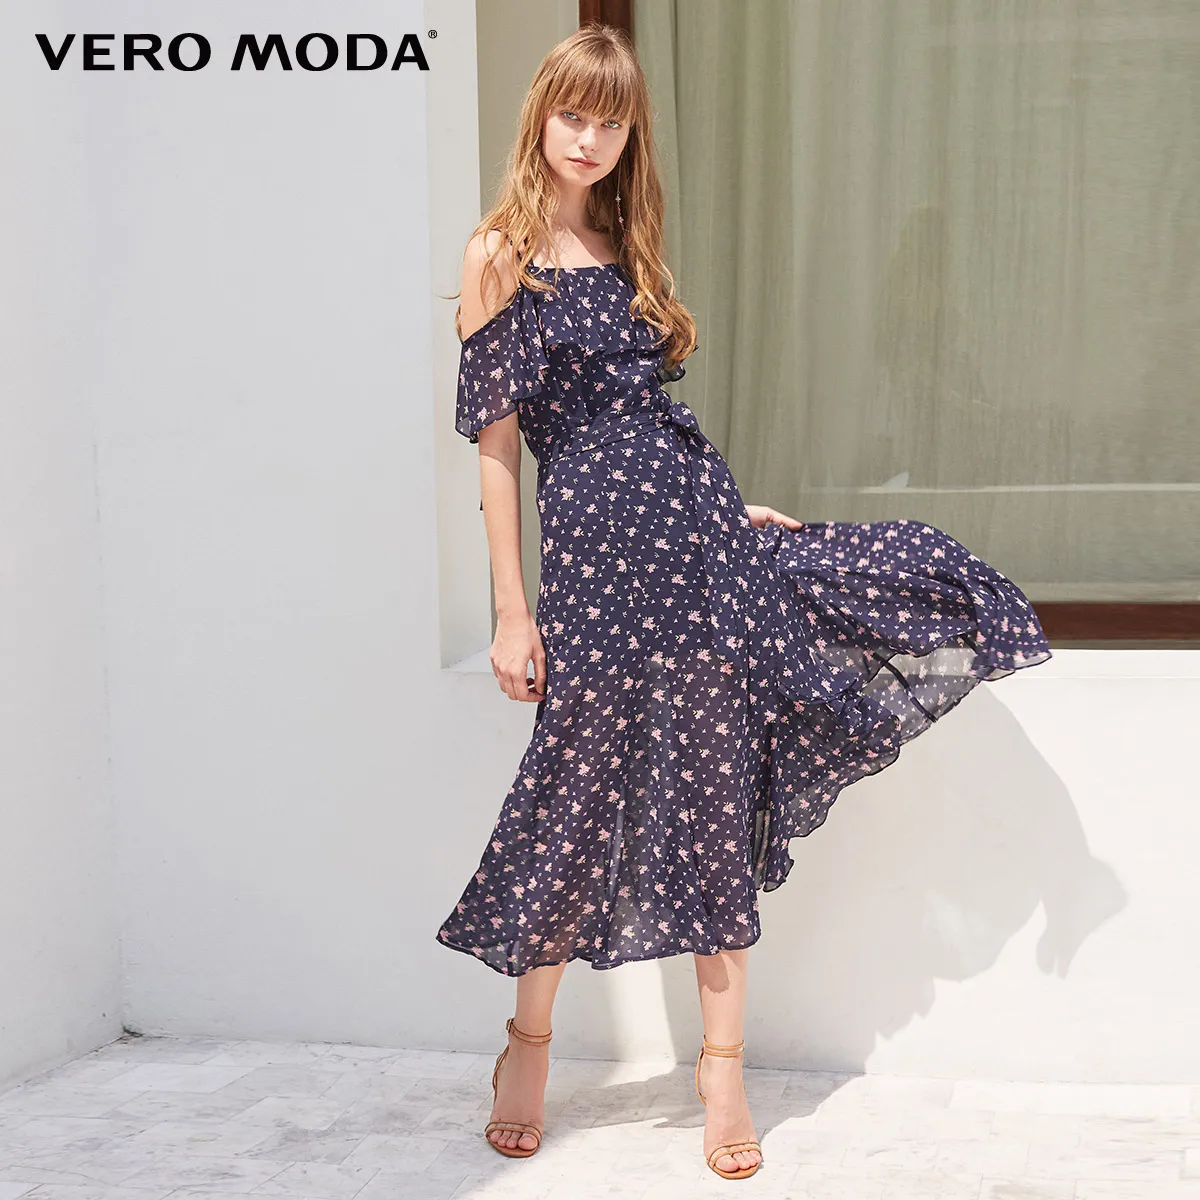 Vero Moda гофрированное Цветочное платье на бретелях Макси/длинное пляжное платье | 31837B508 - Цвет: Midnight blue